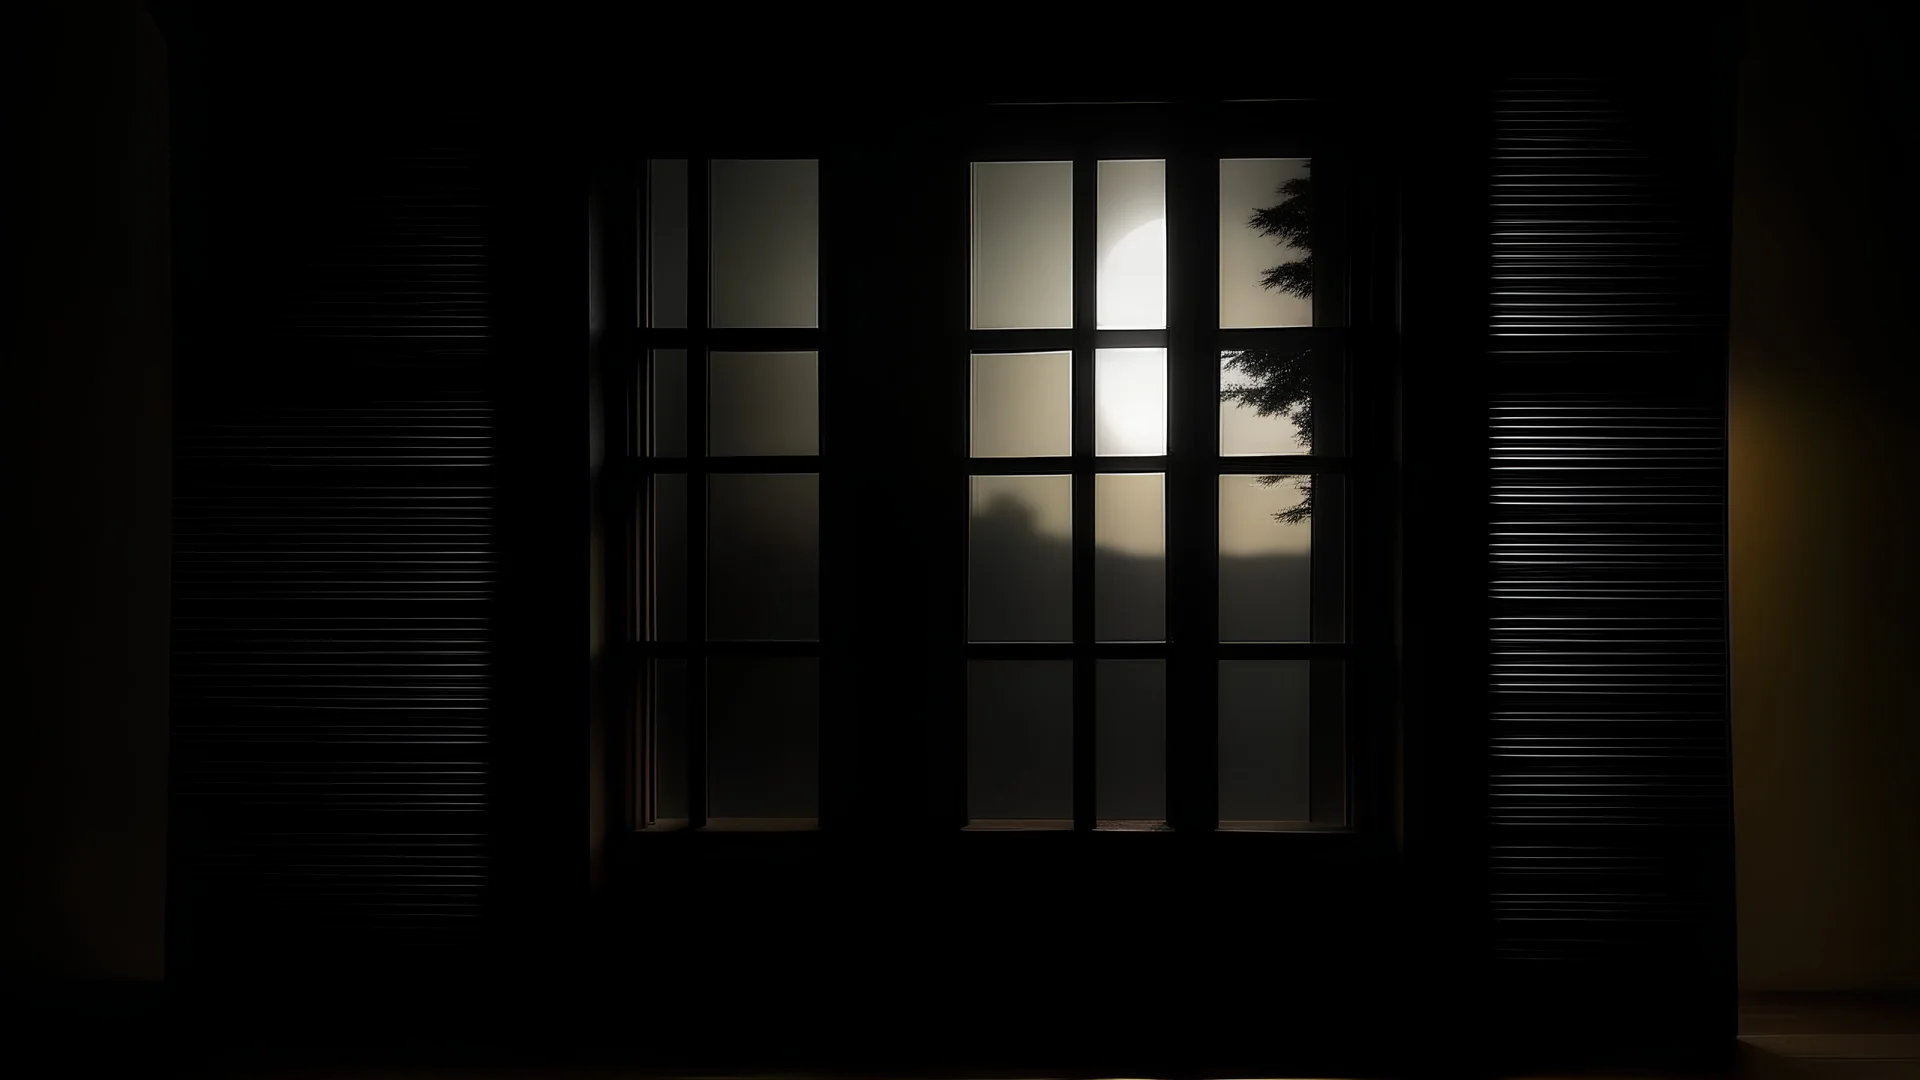 Dibuja una cabaña de madera con la silueta de una persona fantasma en una ventana desde lejos